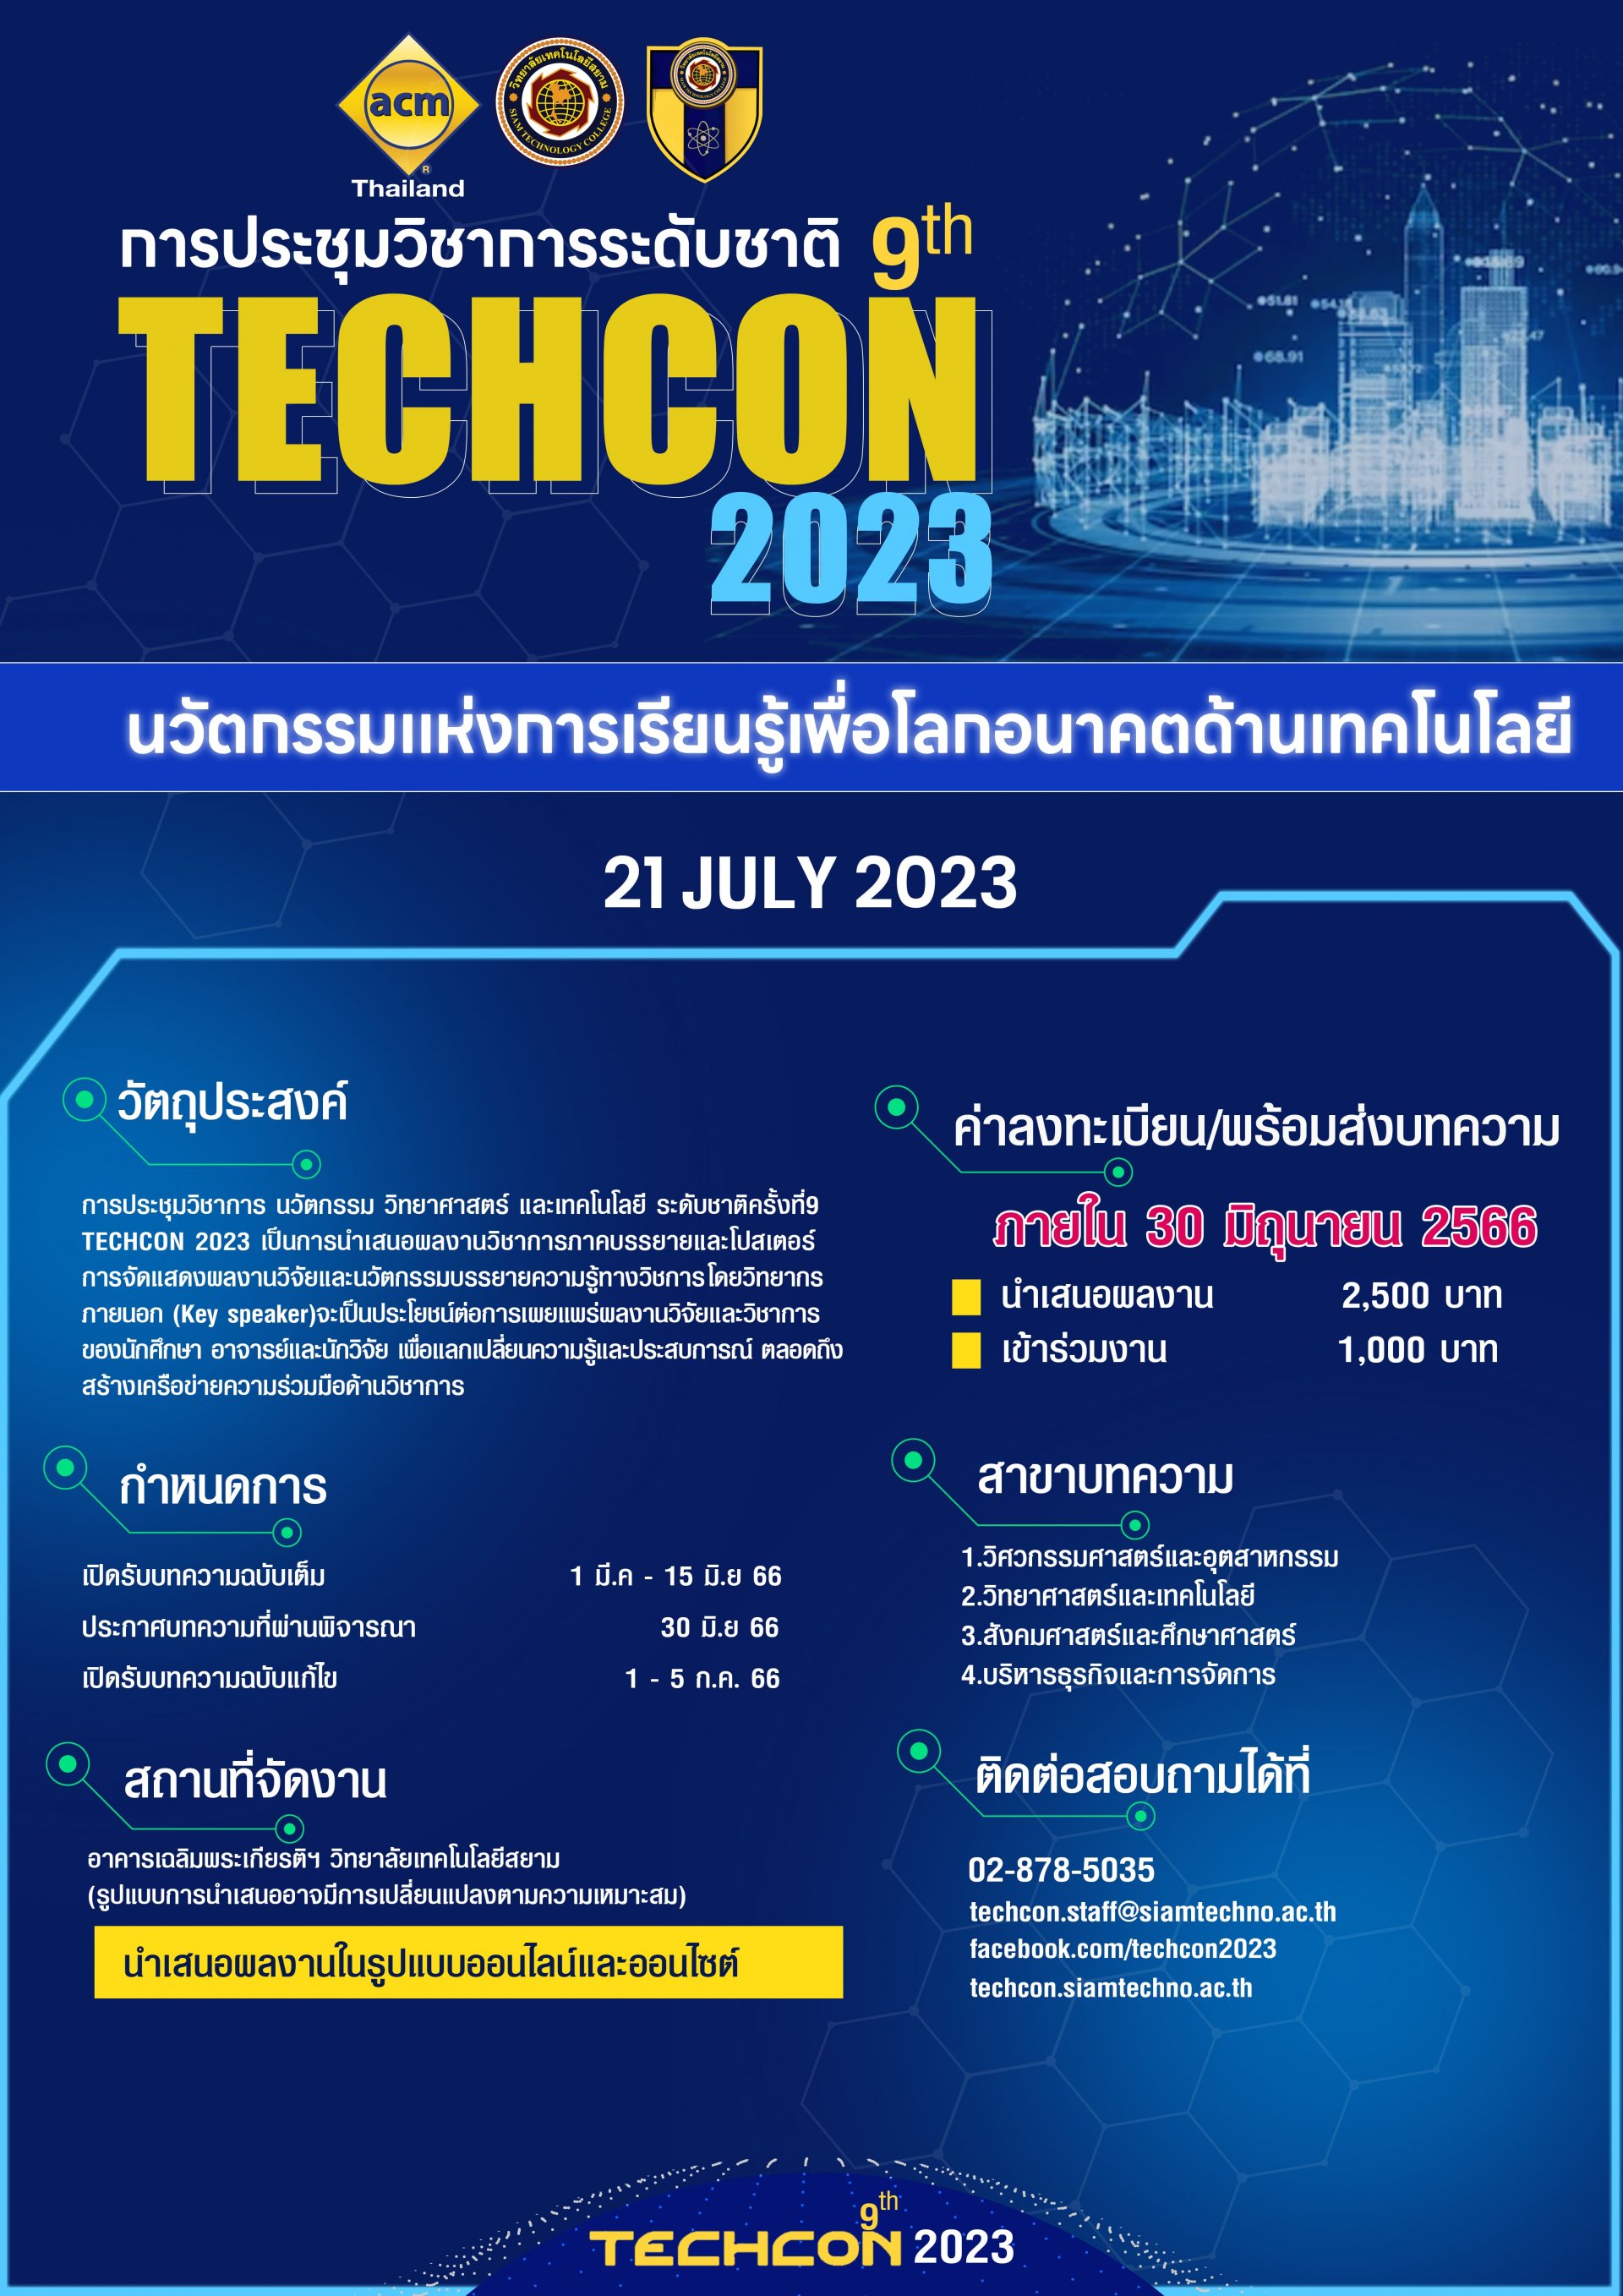 ประชาสัมพันธ์เชิญชวนเข้าร่วมการประชุมวิชาการระดับชาติ ครั้งที่ 9 (The 9th TECHNOLOGY 2023)